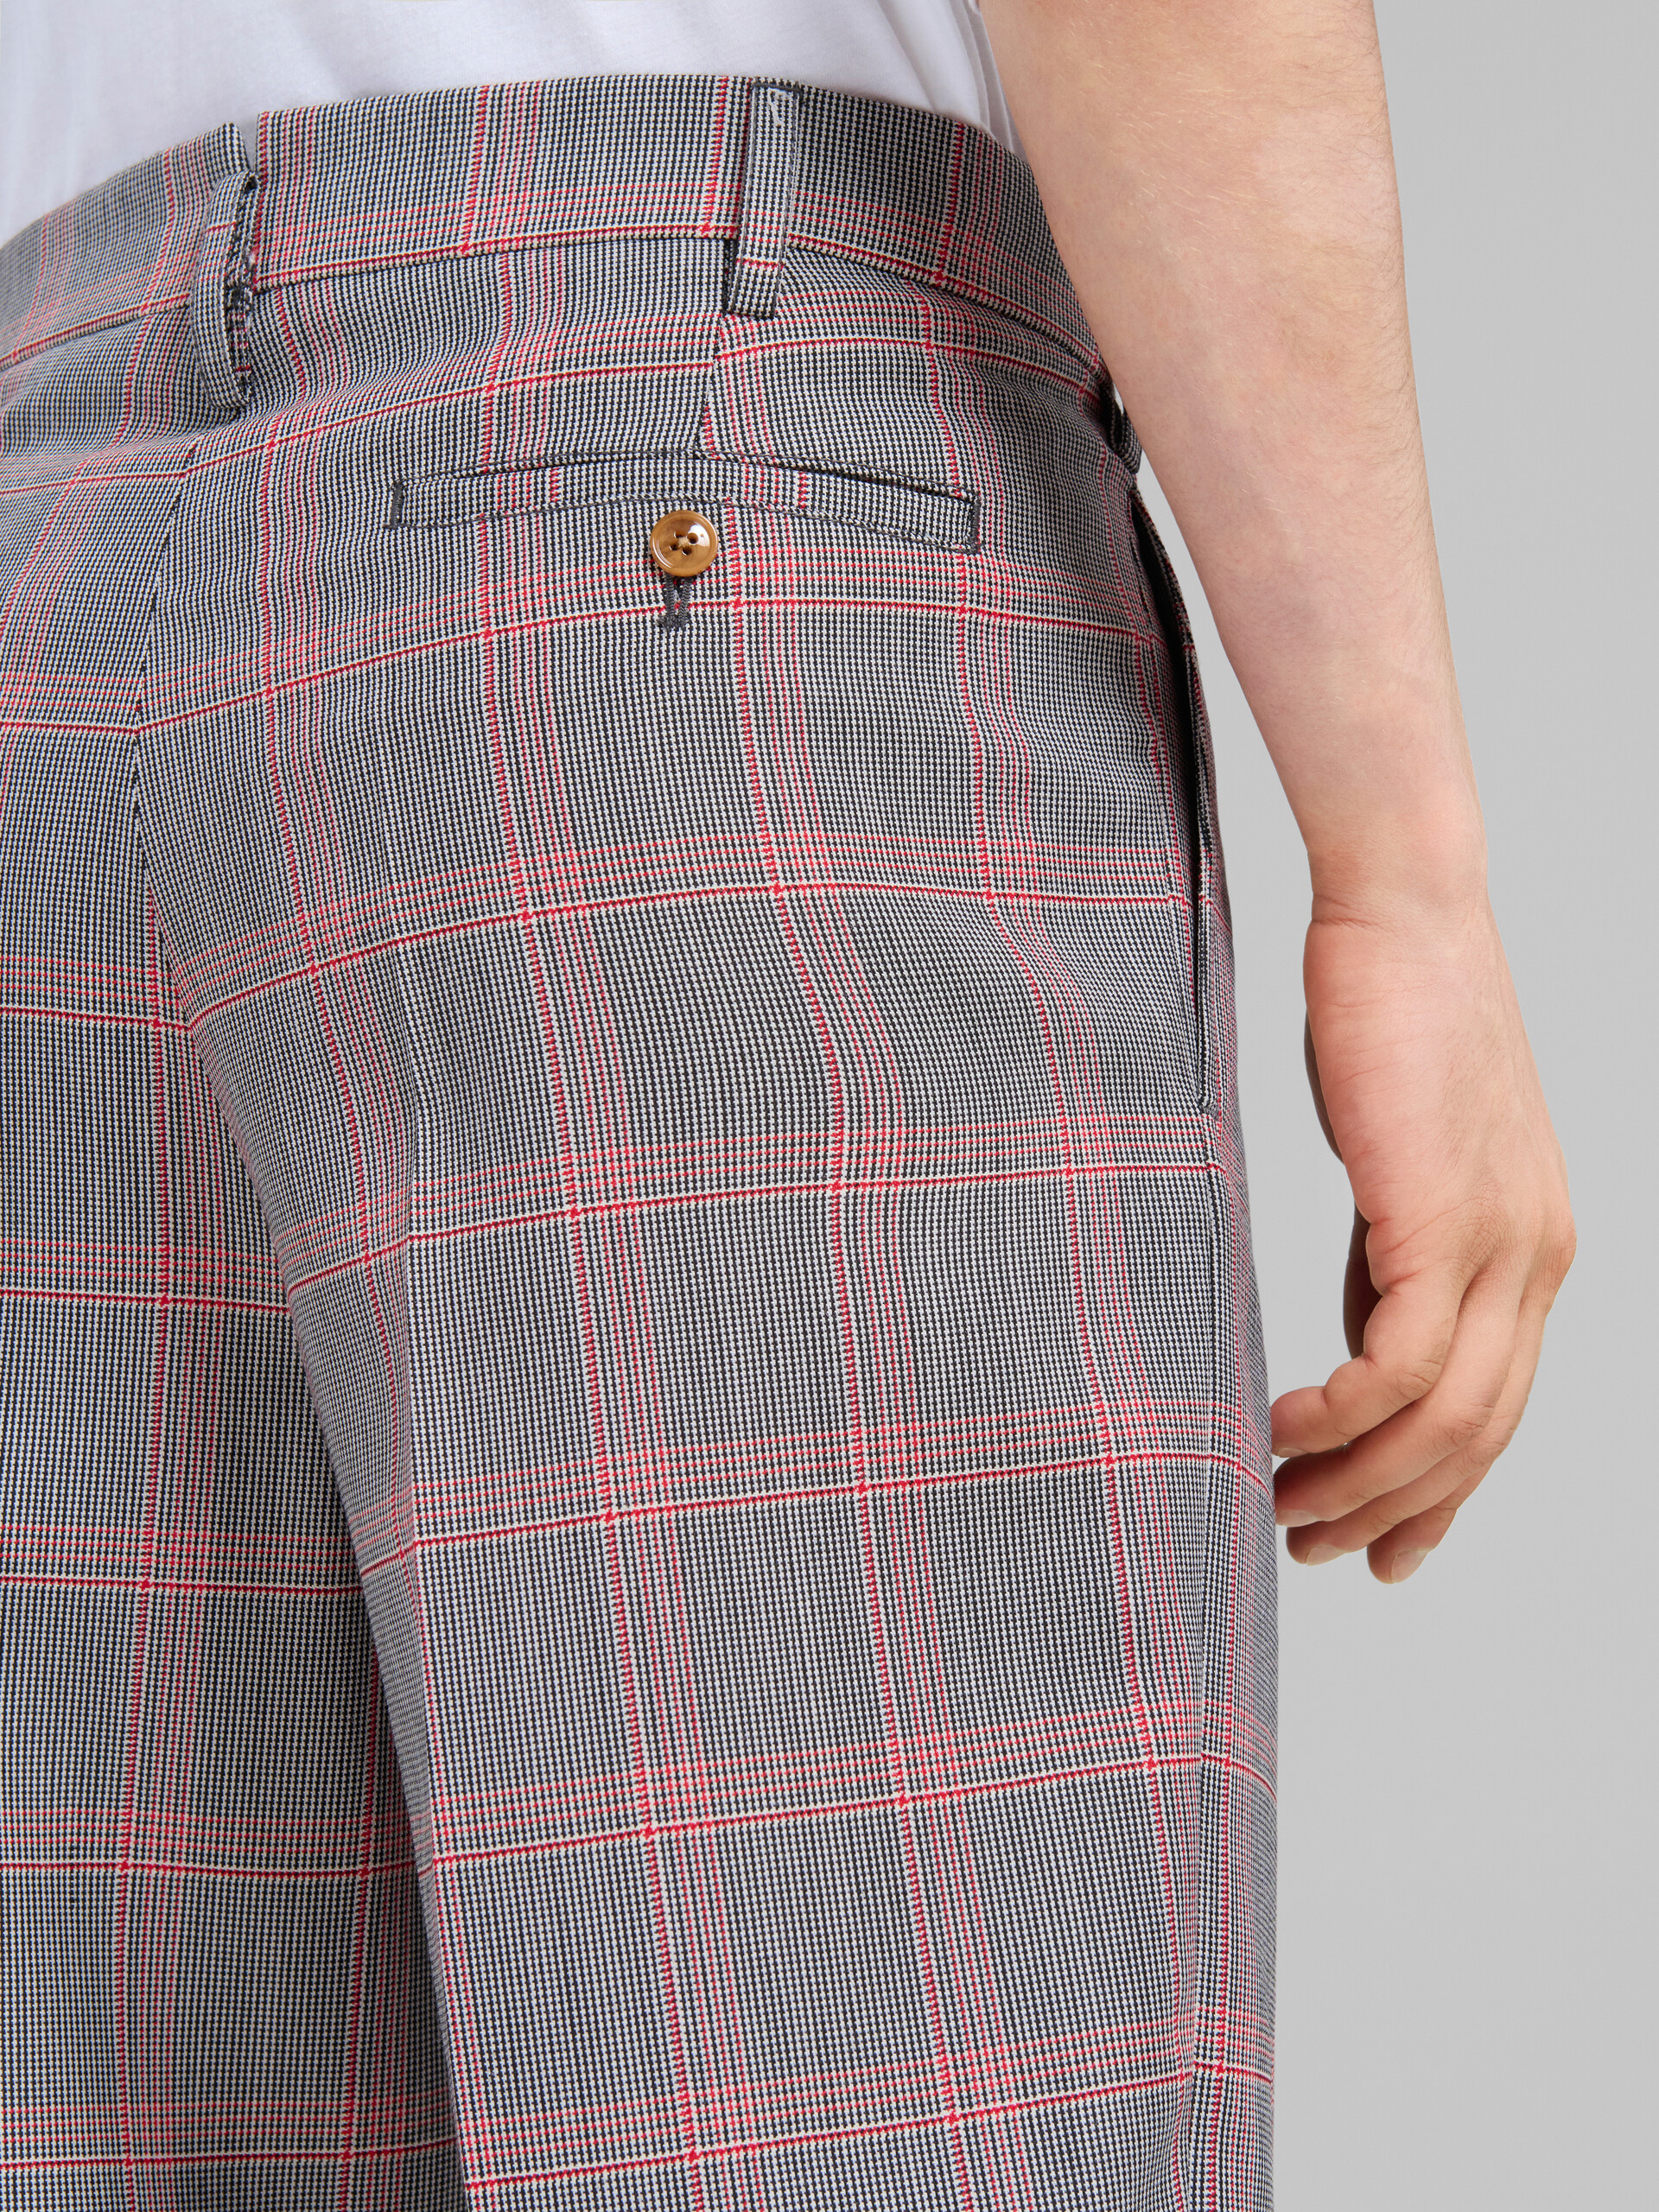 Pantaloni chino in lana tecnica con motivo check arancione - Pantaloni - Image 4